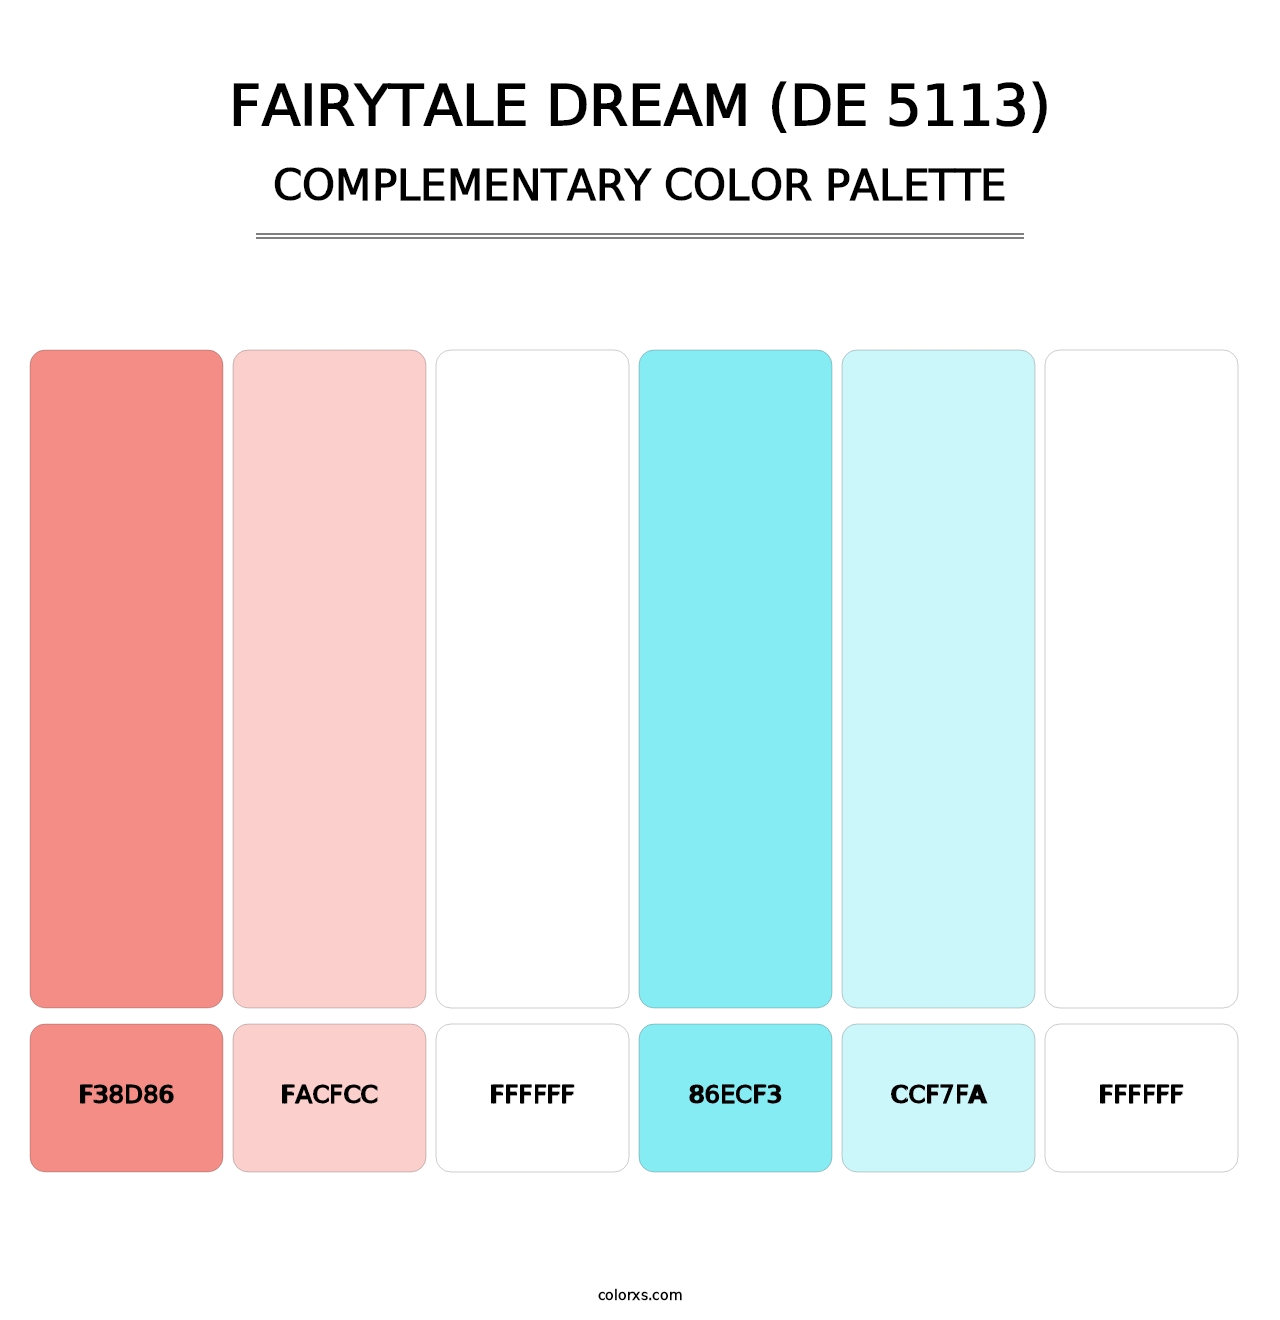 Fairytale Dream (DE 5113) - Complementary Color Palette